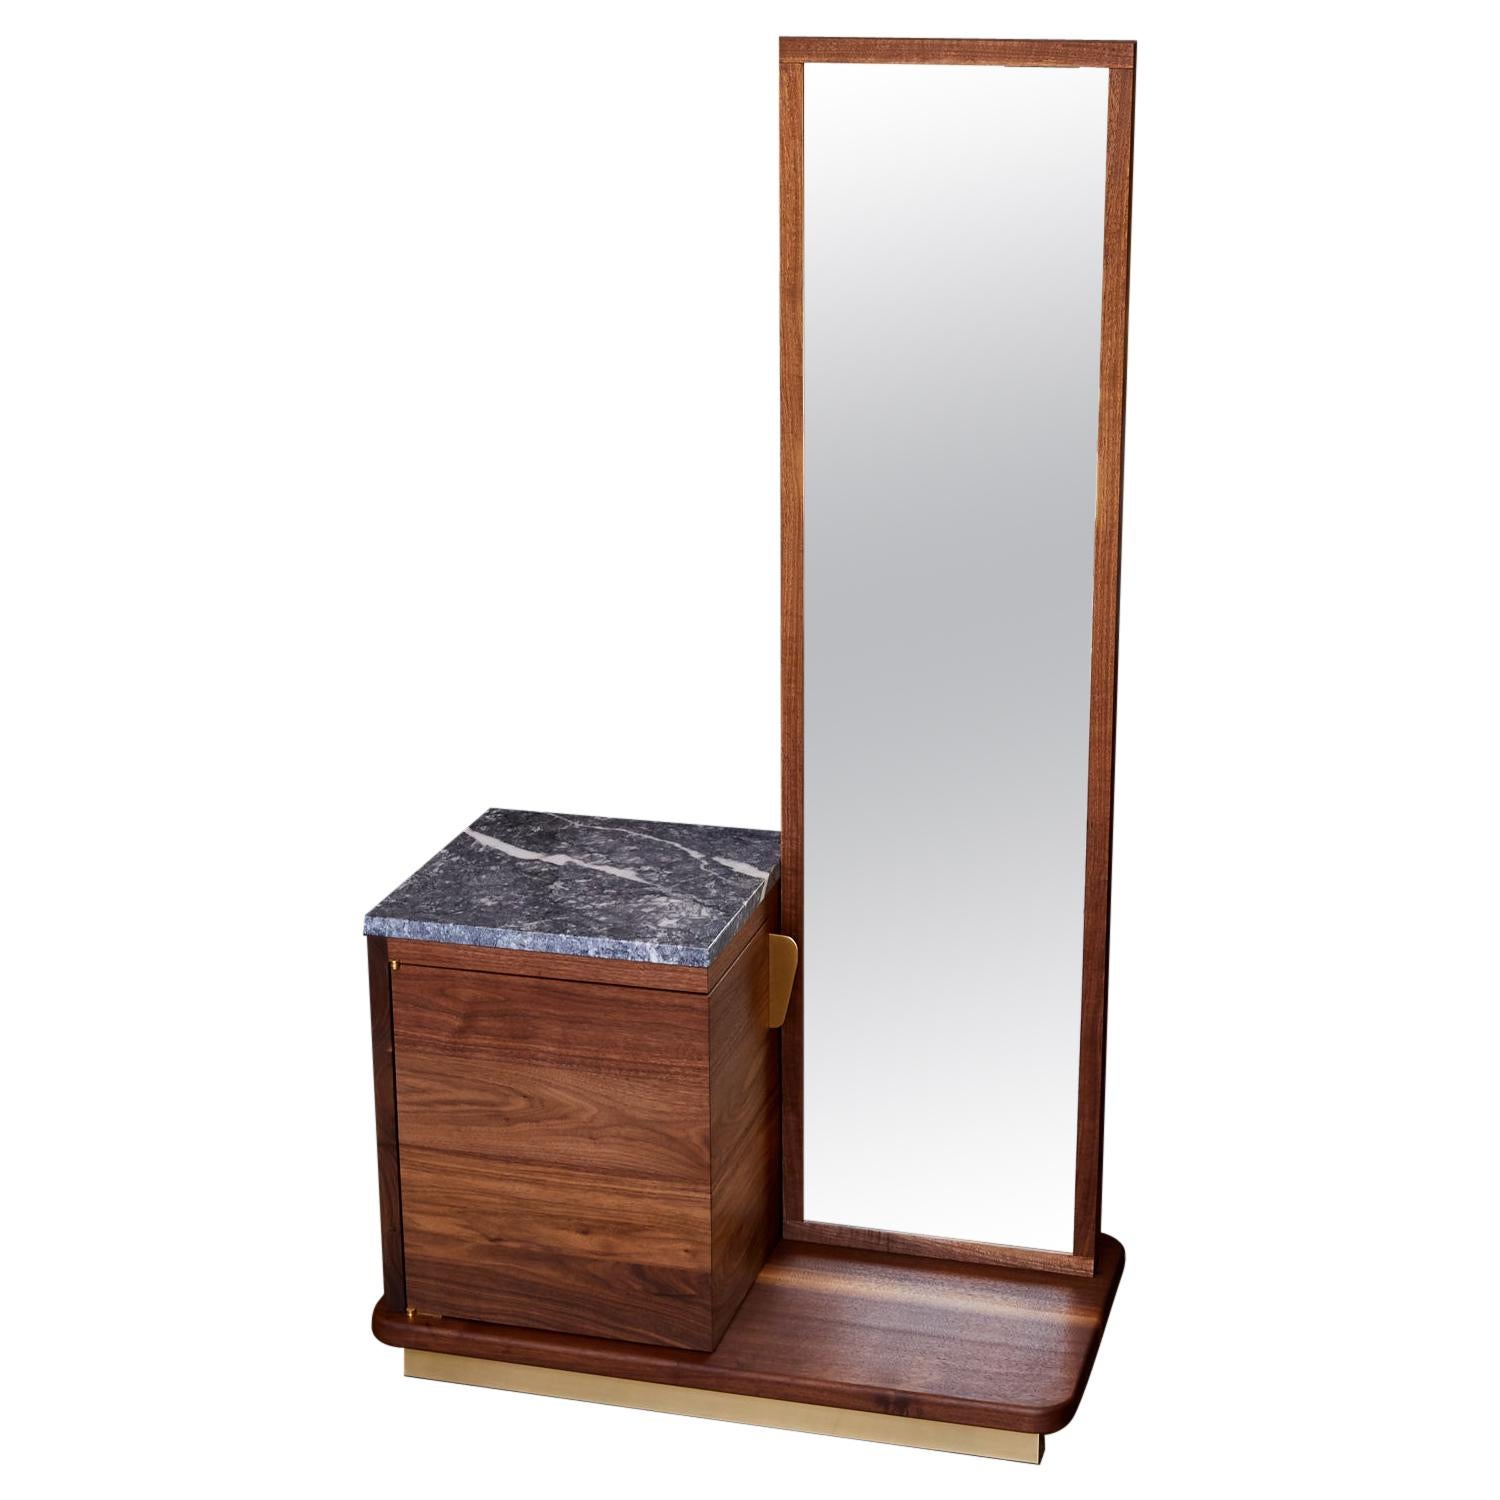 Meuble de rangement/meuble bar « Bredley » avec piédestal en miroir, noyer, miroir et verre laiton